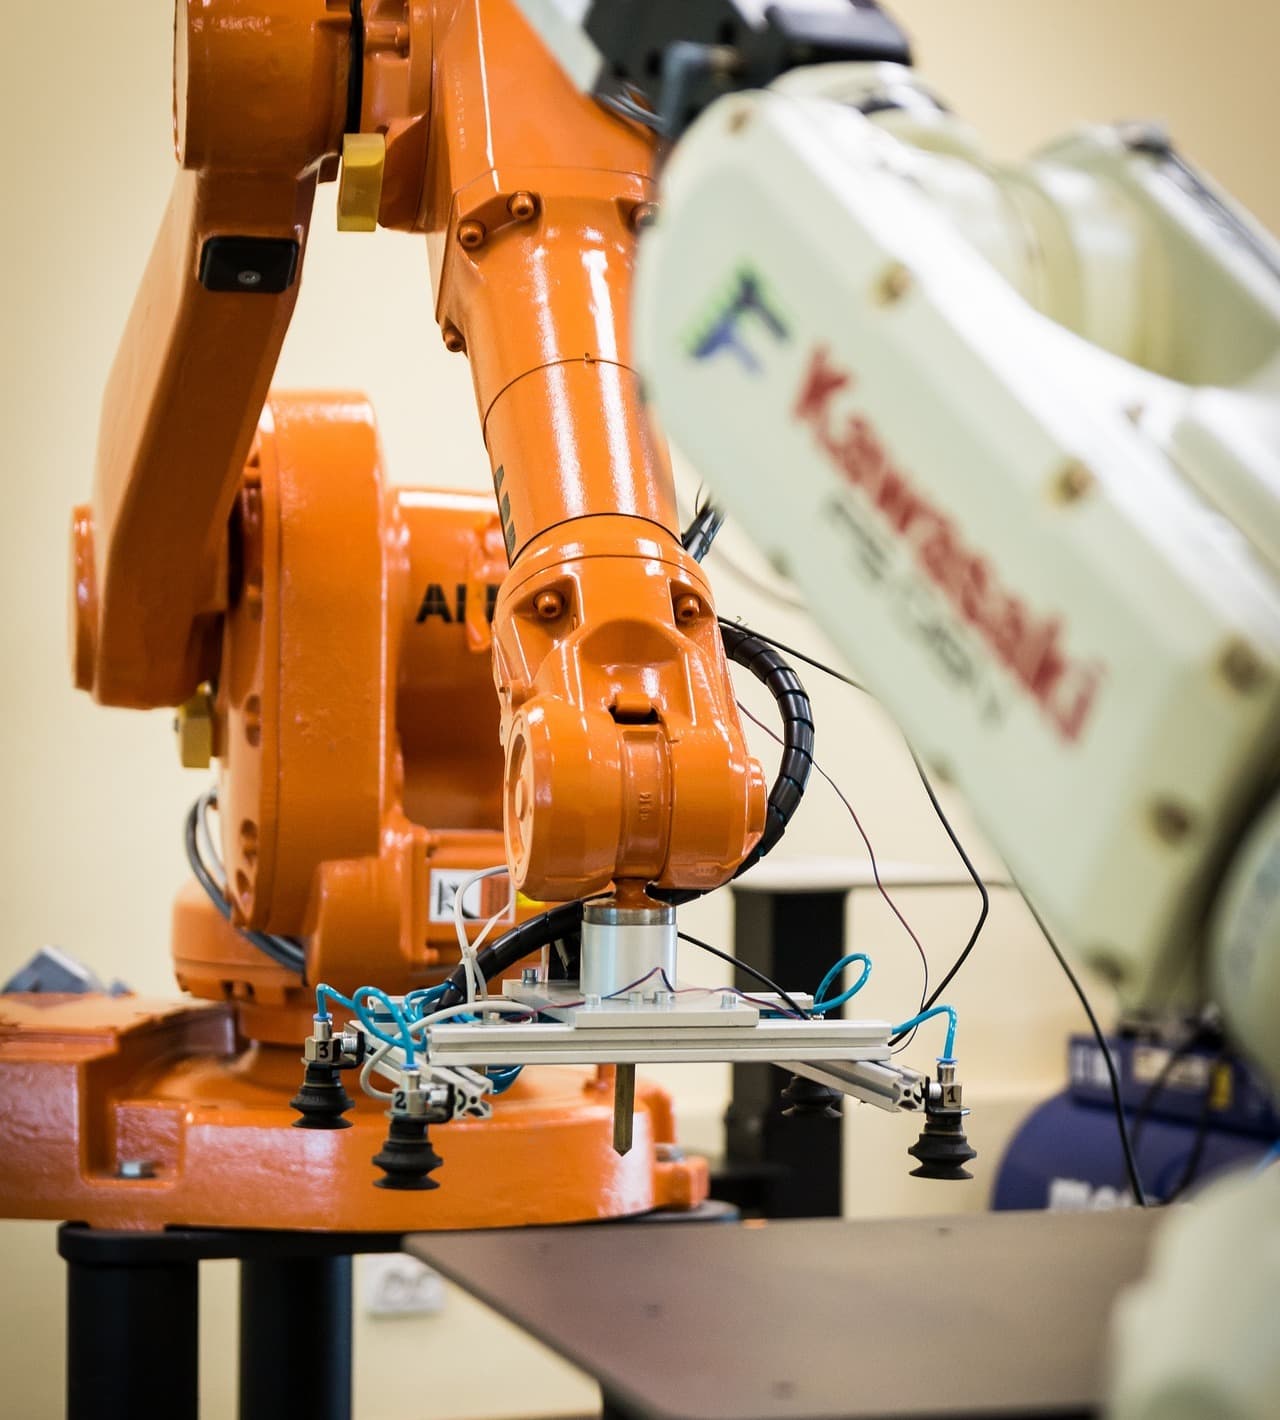 Nowe trendy w przemyśle: Automatyzacja i robotyka – Kształtowanie przyszłości produkcji